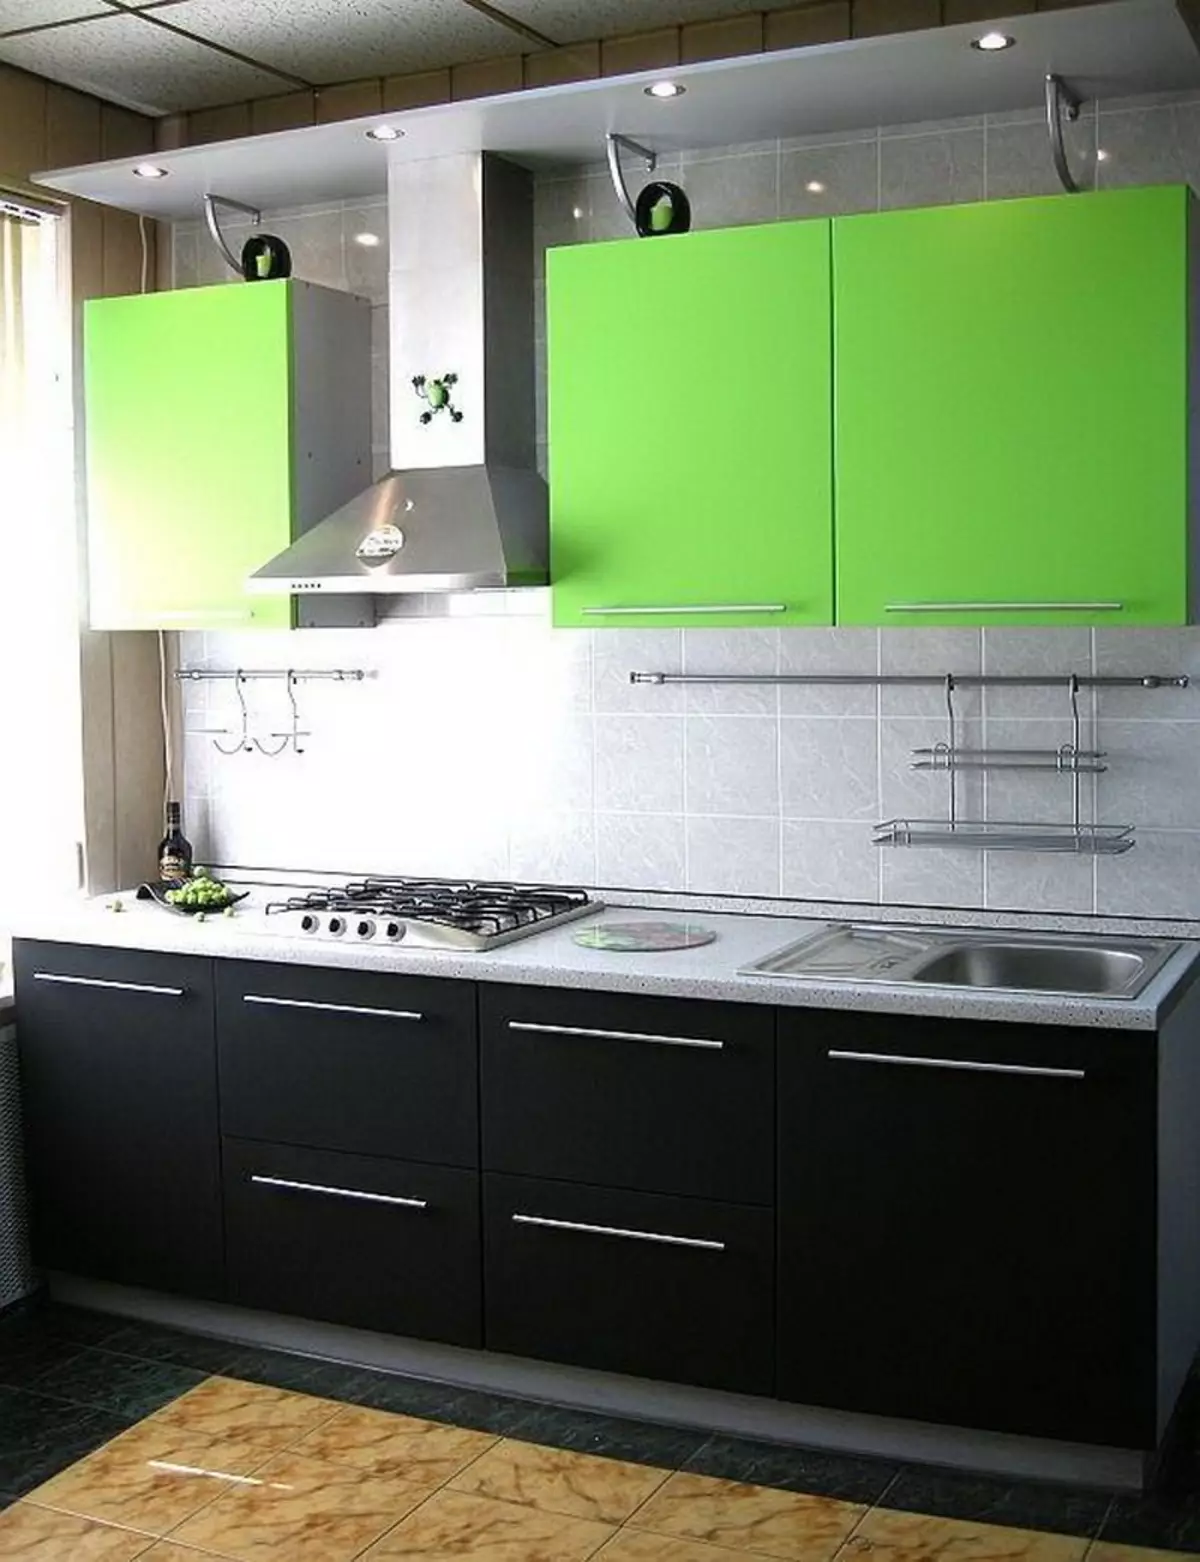 Grönt kök (111 bilder): Grönt köksheadset i inredning, grönt tapetval, grågrön och mörkgrön, svart och grönt och grönt brunt kök 9554_54